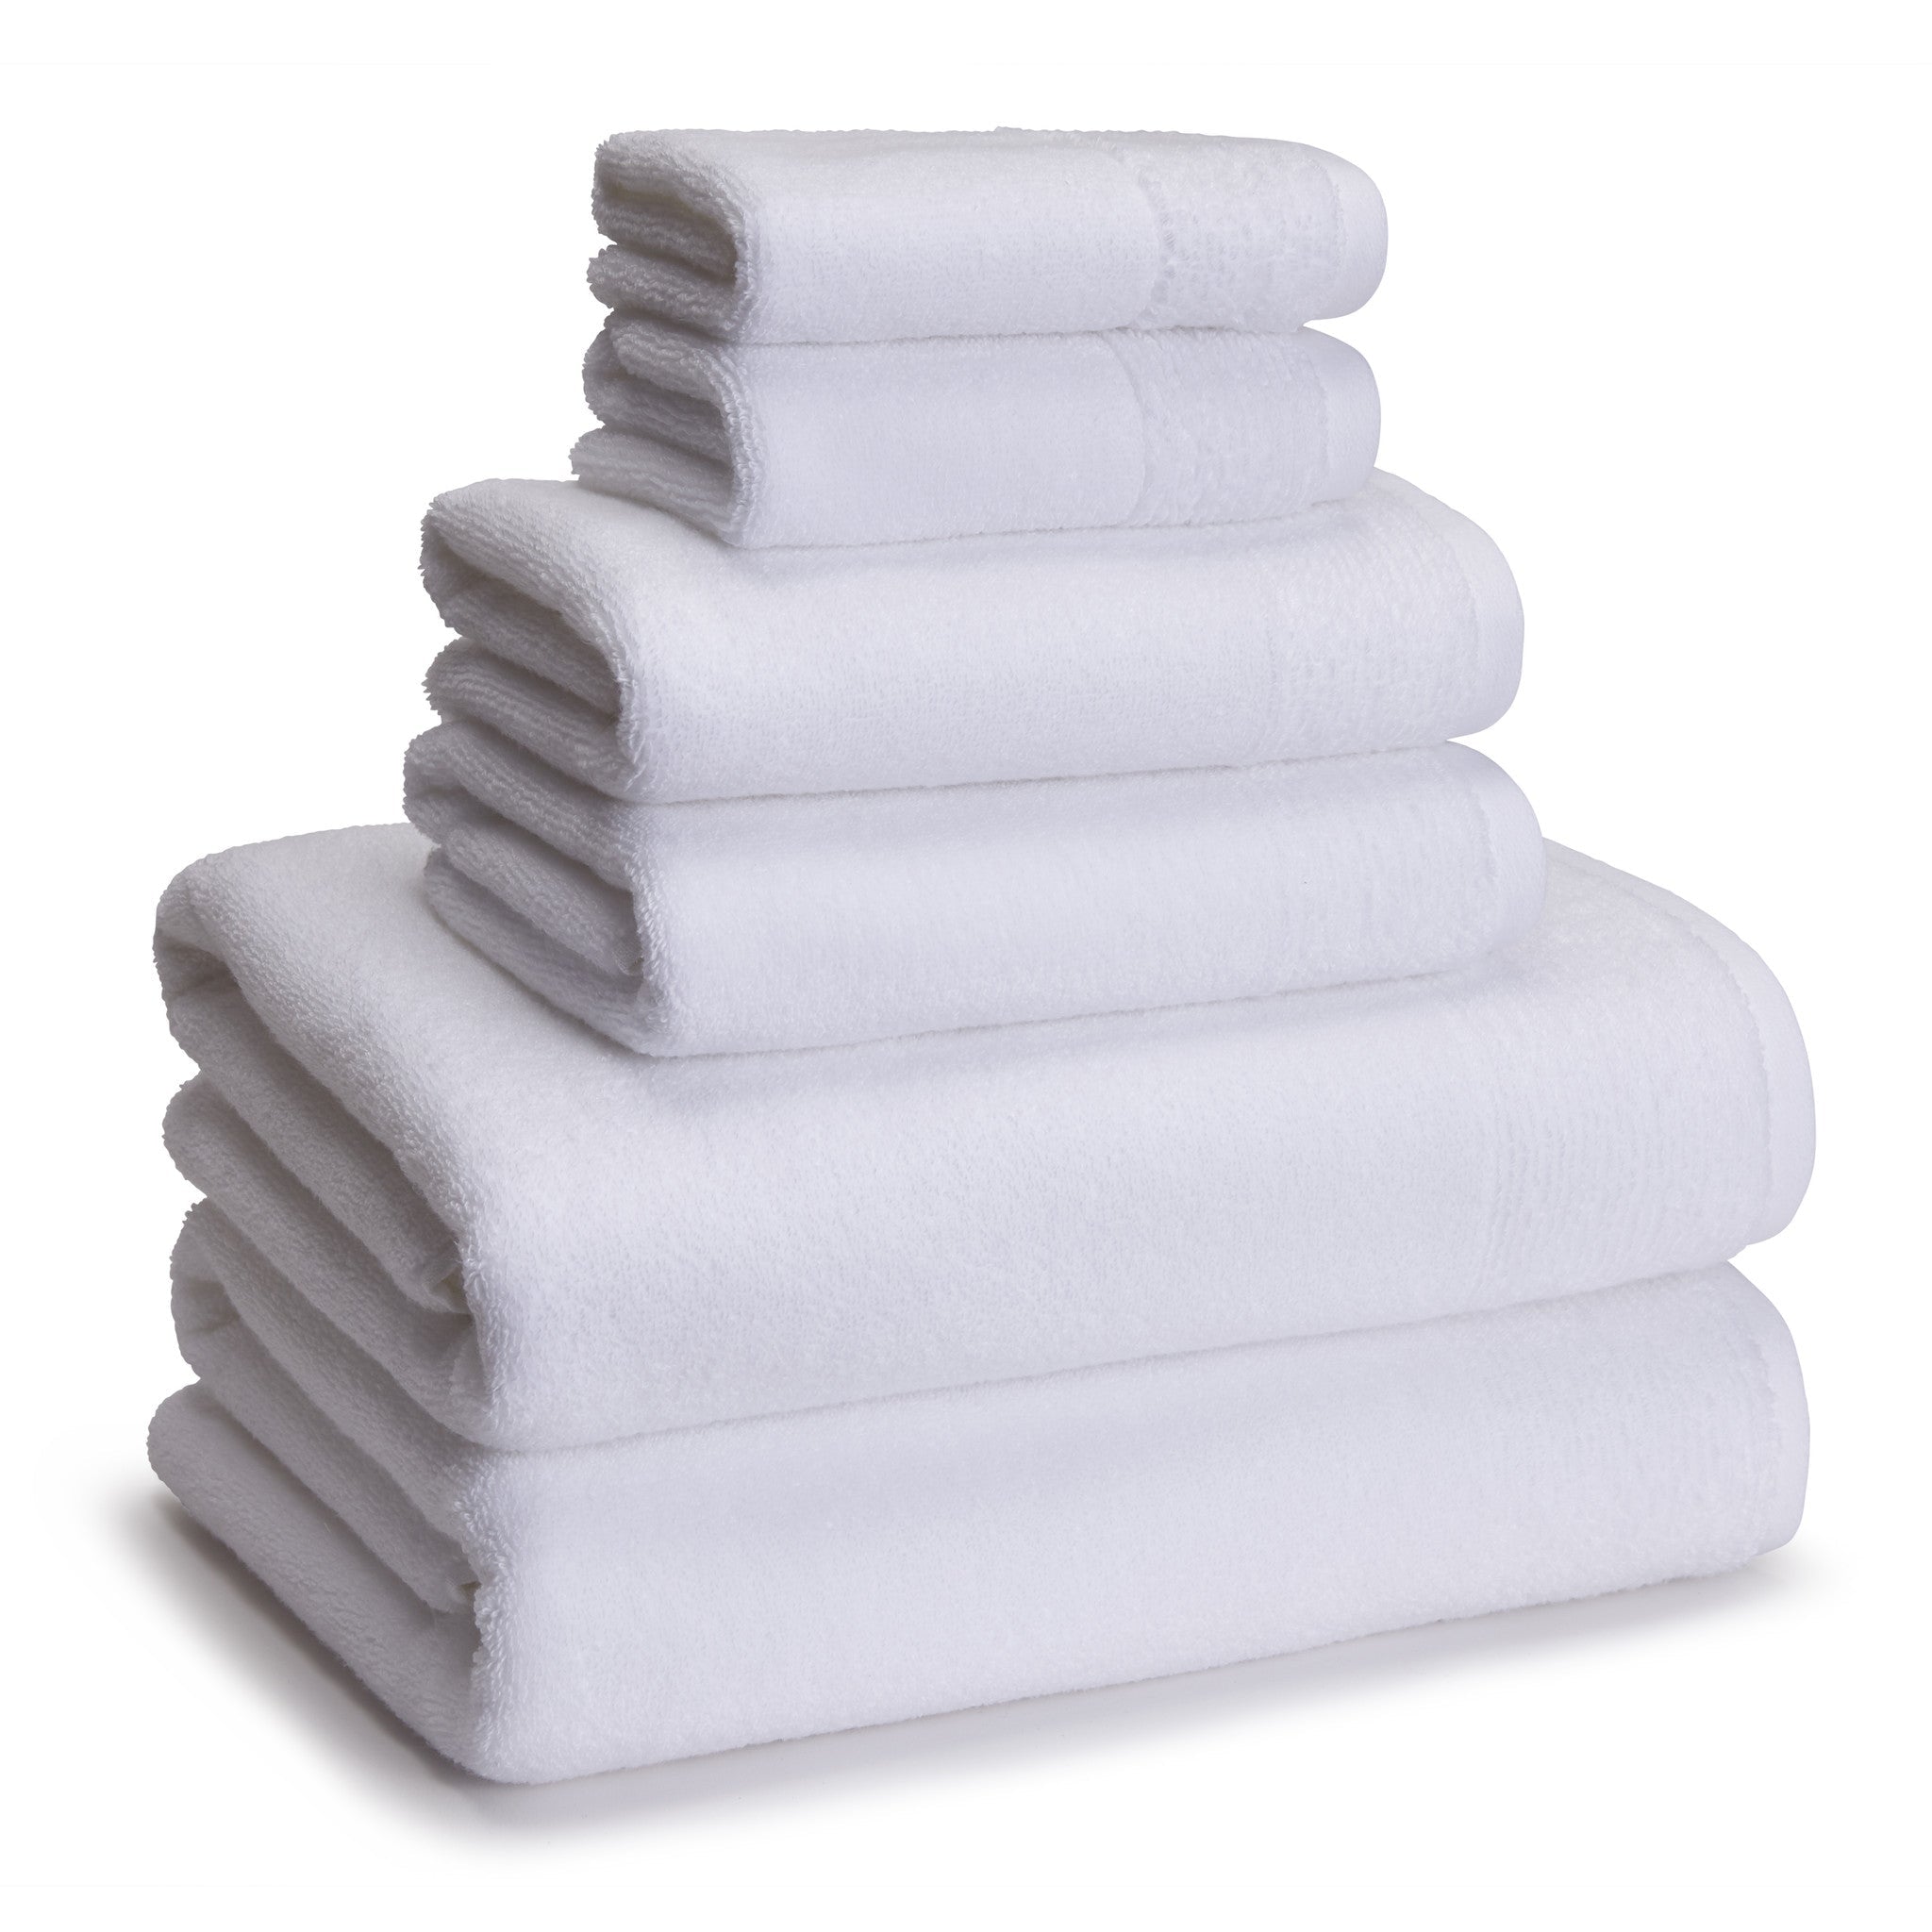 Kassatex Kyoto Towels